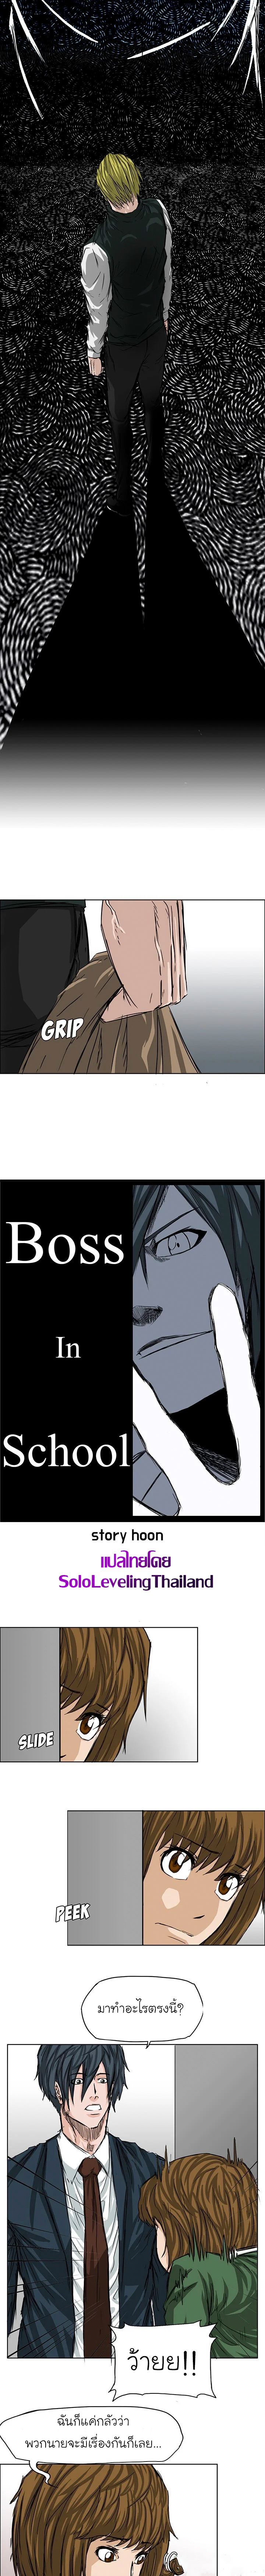 Boss in School 18 6